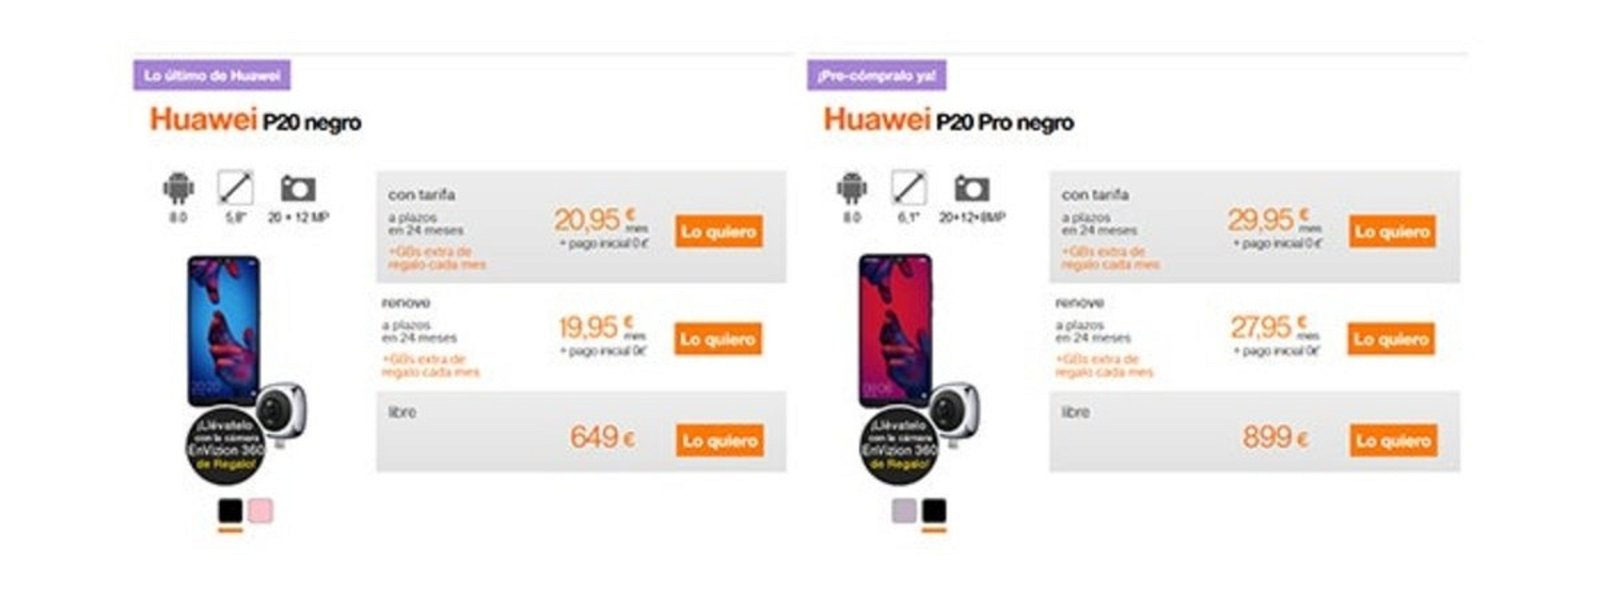 Precios Huawei P20 Orange